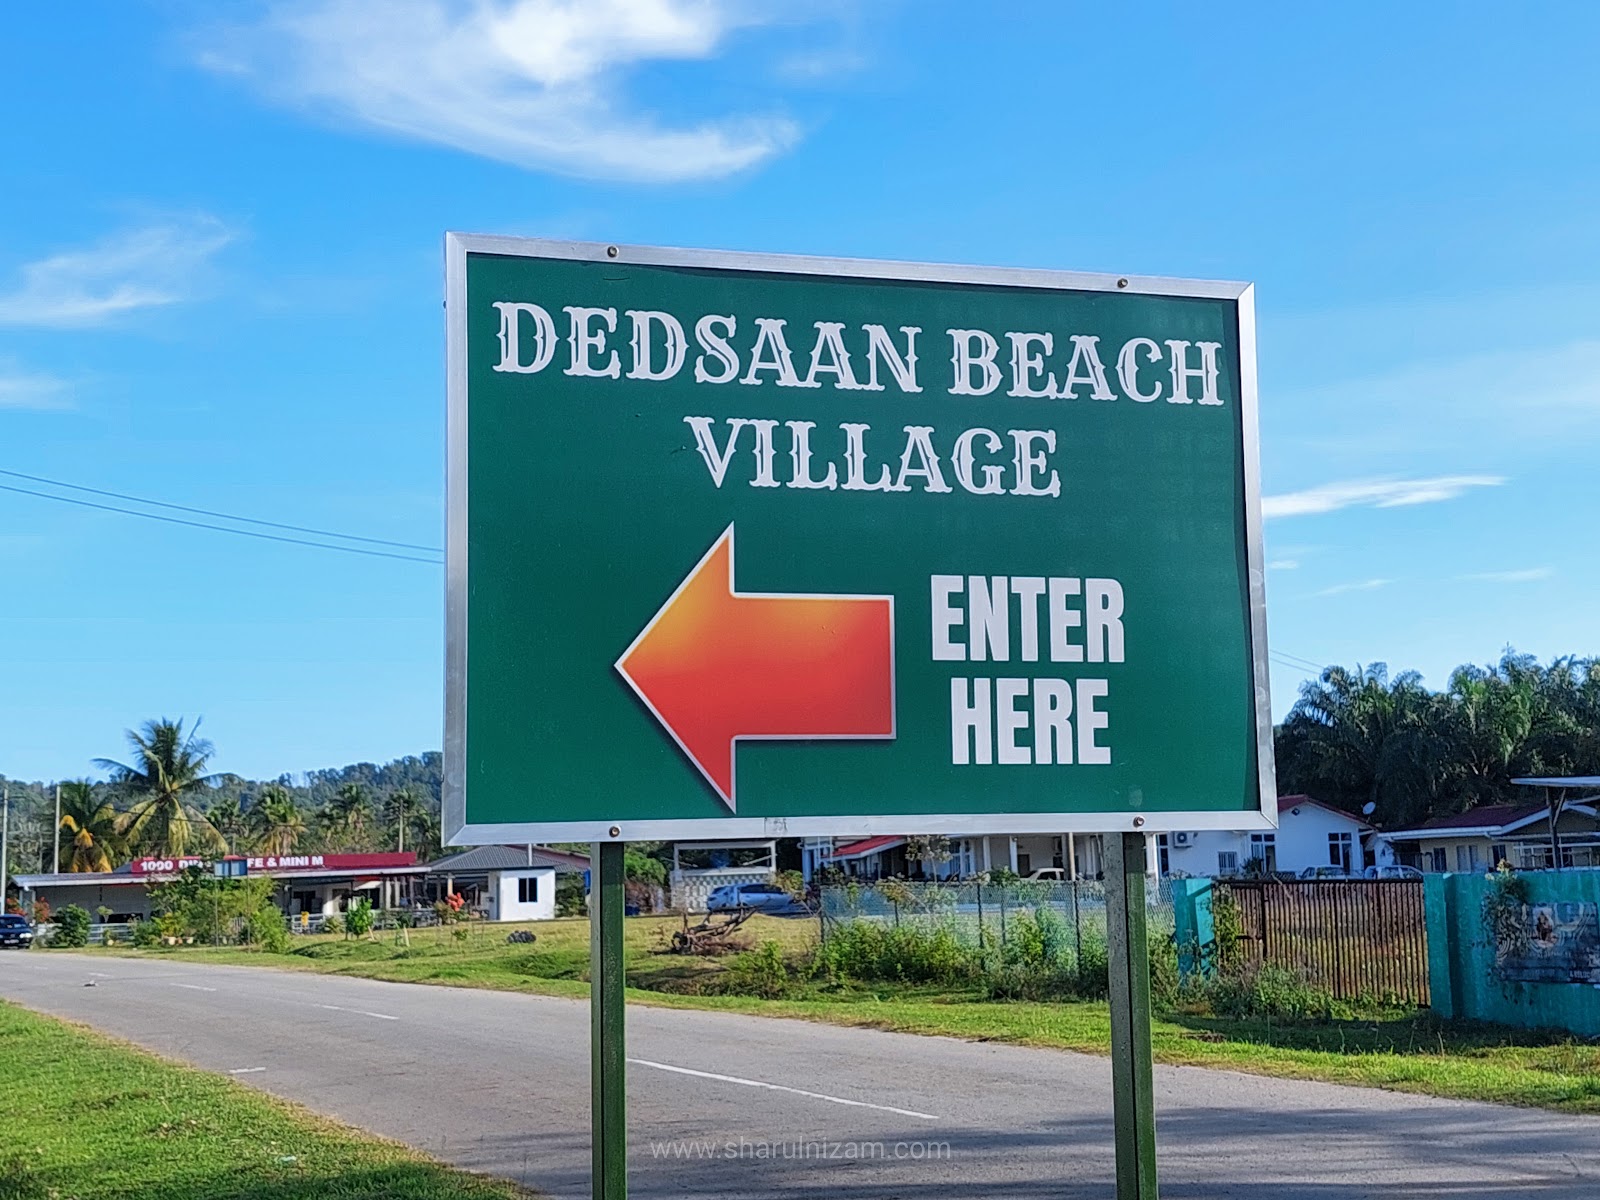 Hotel Dedsaan Beach Village, Kota Belud, Sabah